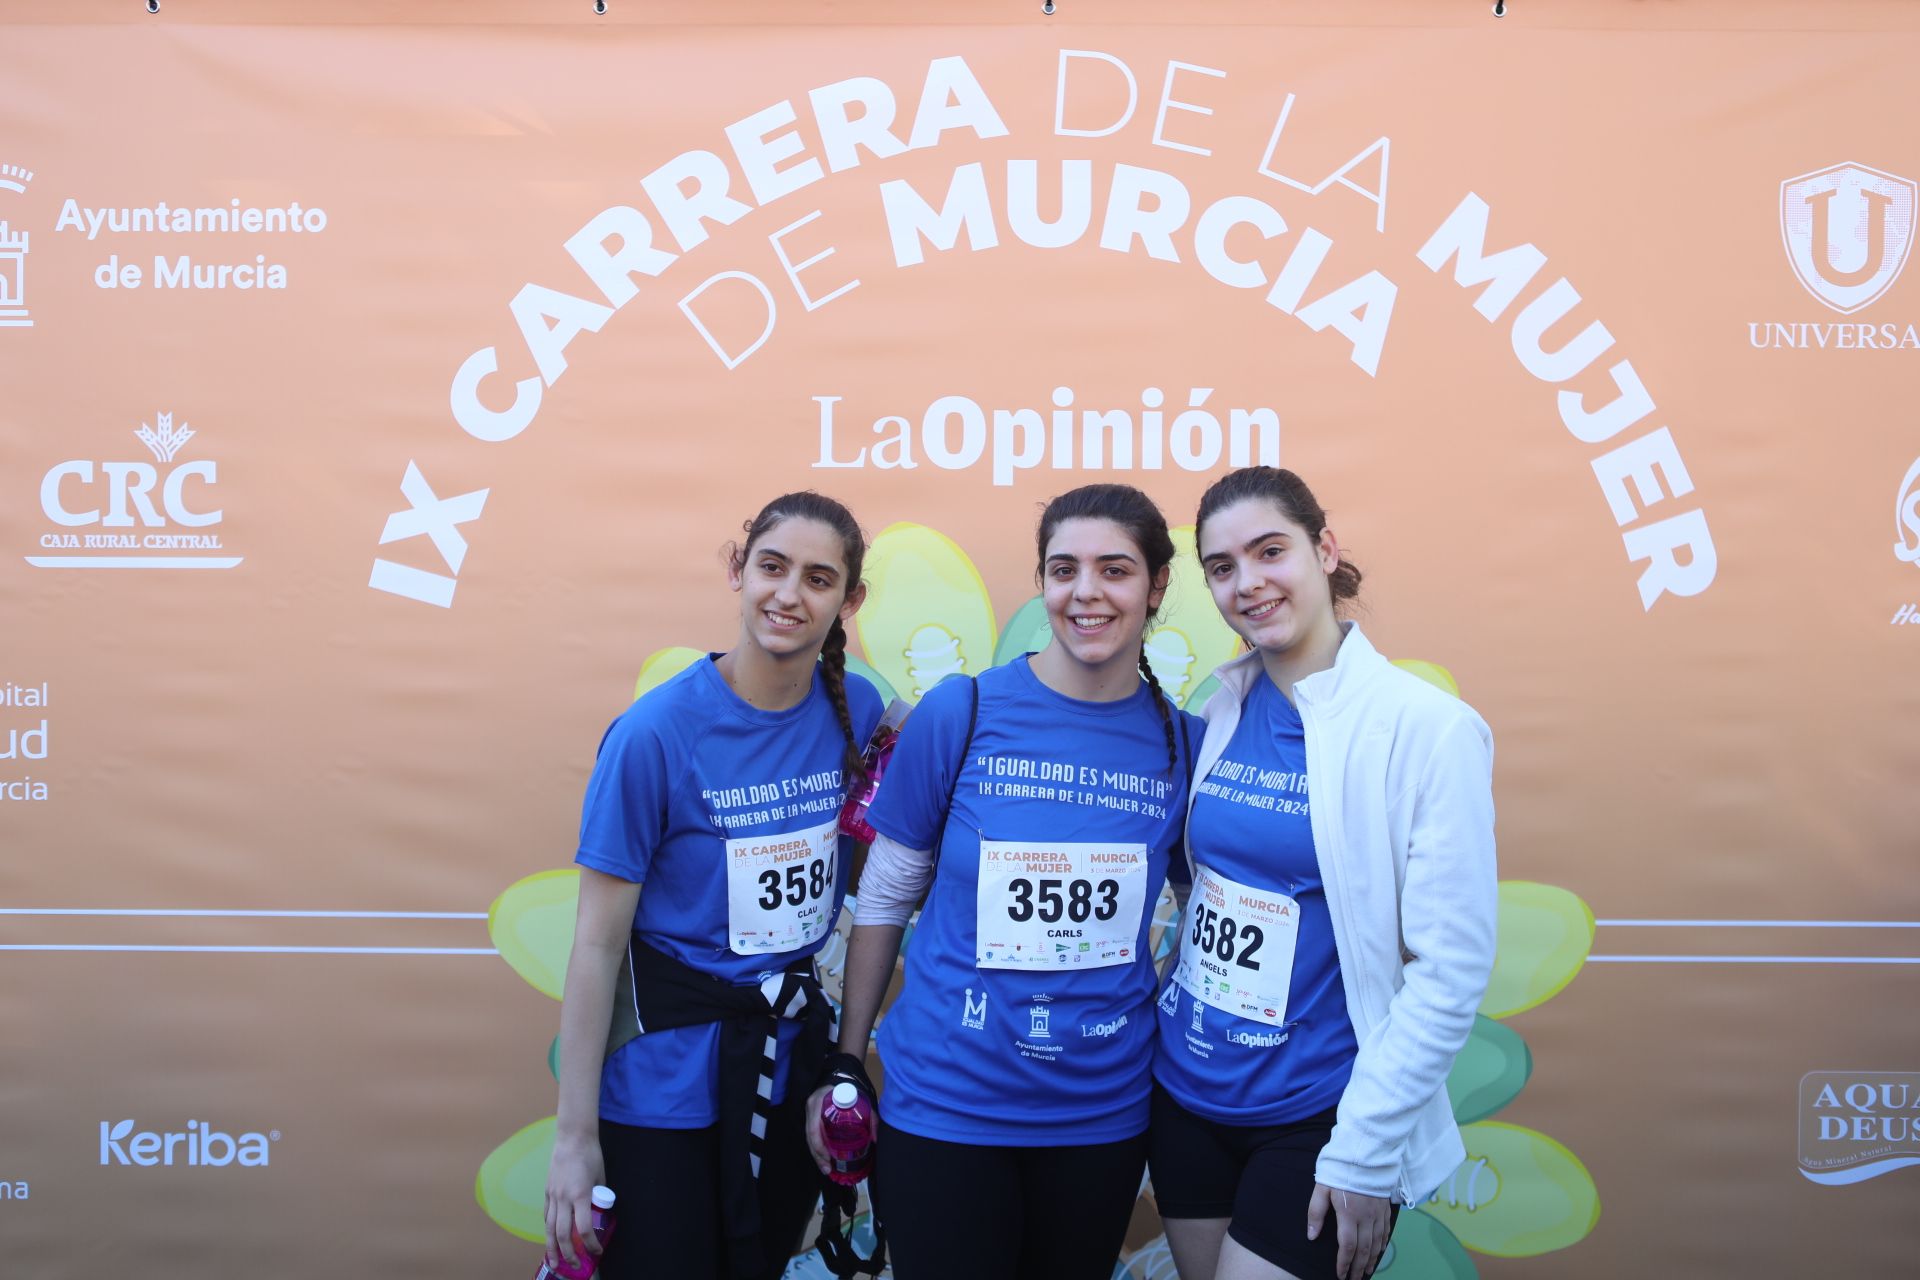 Las participantes posan en el photocall tras finalizar la Carrera de la mujer de Murcia